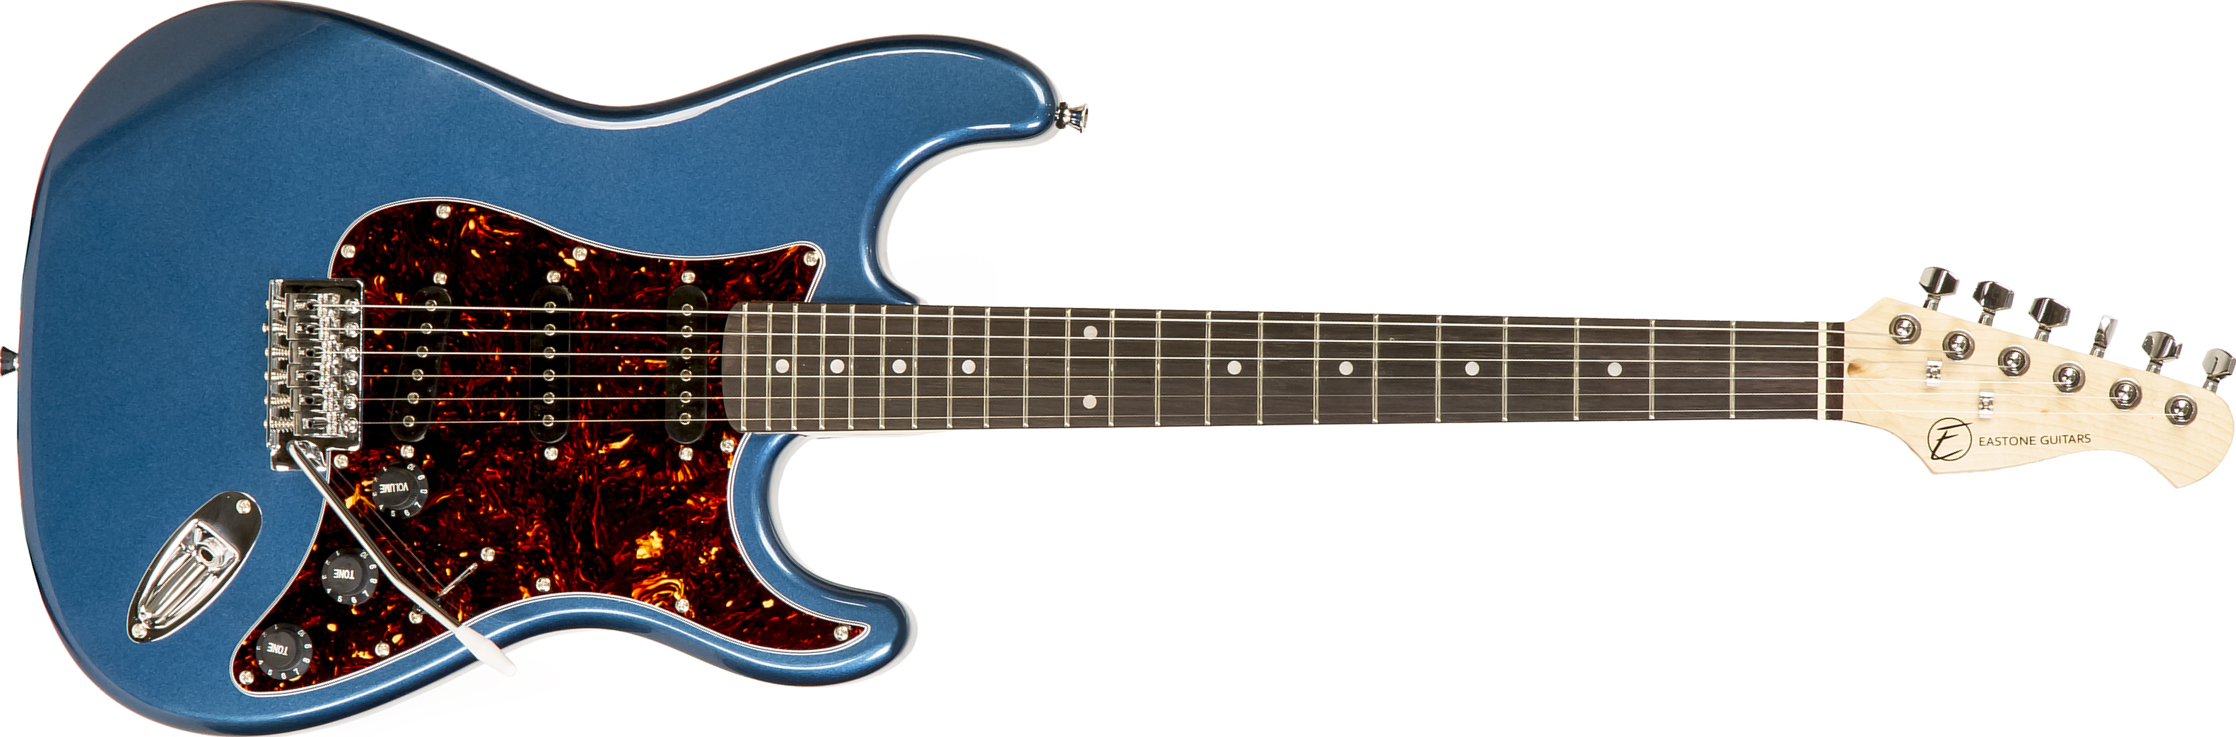 Eastone Str70t 3s Trem Pur - Lake Placid Blue - Str shape electric guitar - Main picture